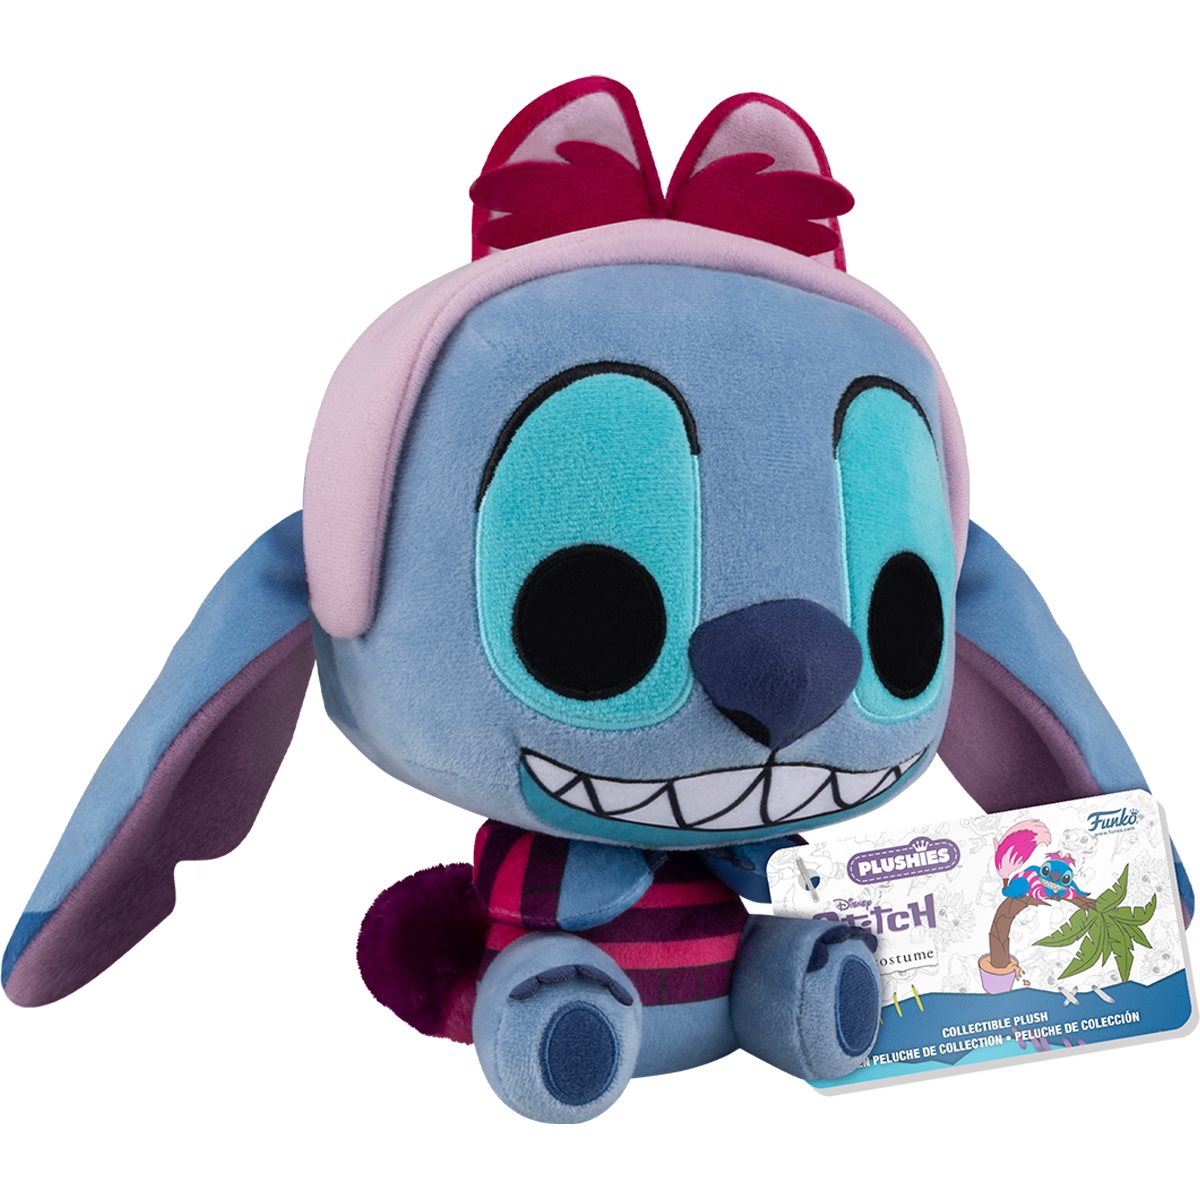 Funko Pop Plush: Disney Stitch In Costume - Stitch Como El Gato Sonriente 7 Pulgadas